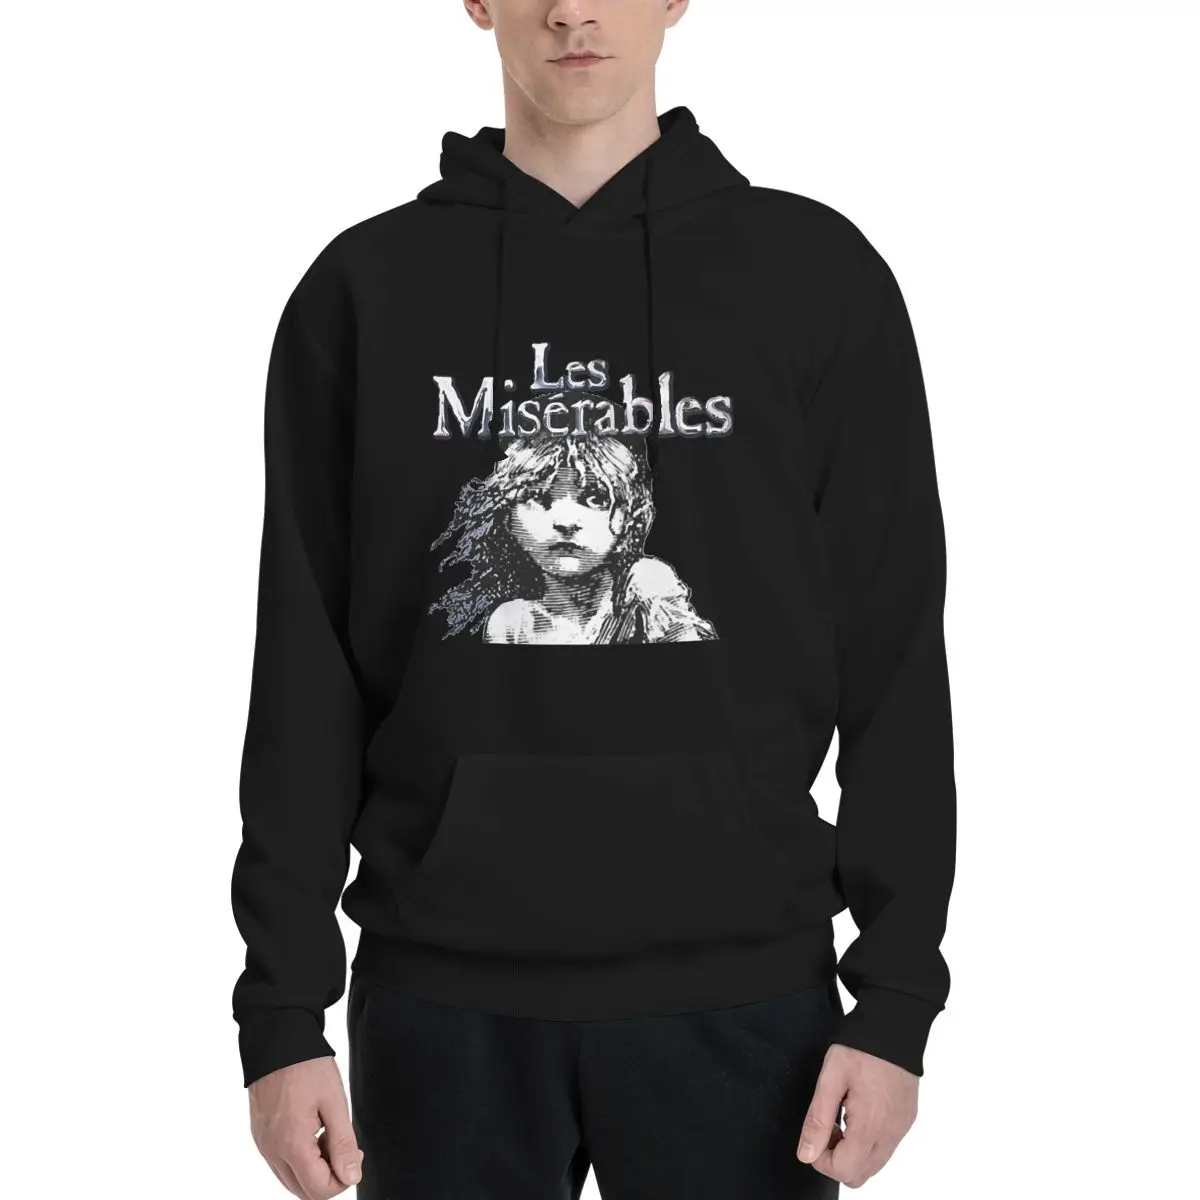 

Толстовка Les Miserables из полиэстера, мужской женский свитер, размер XXS-3XL